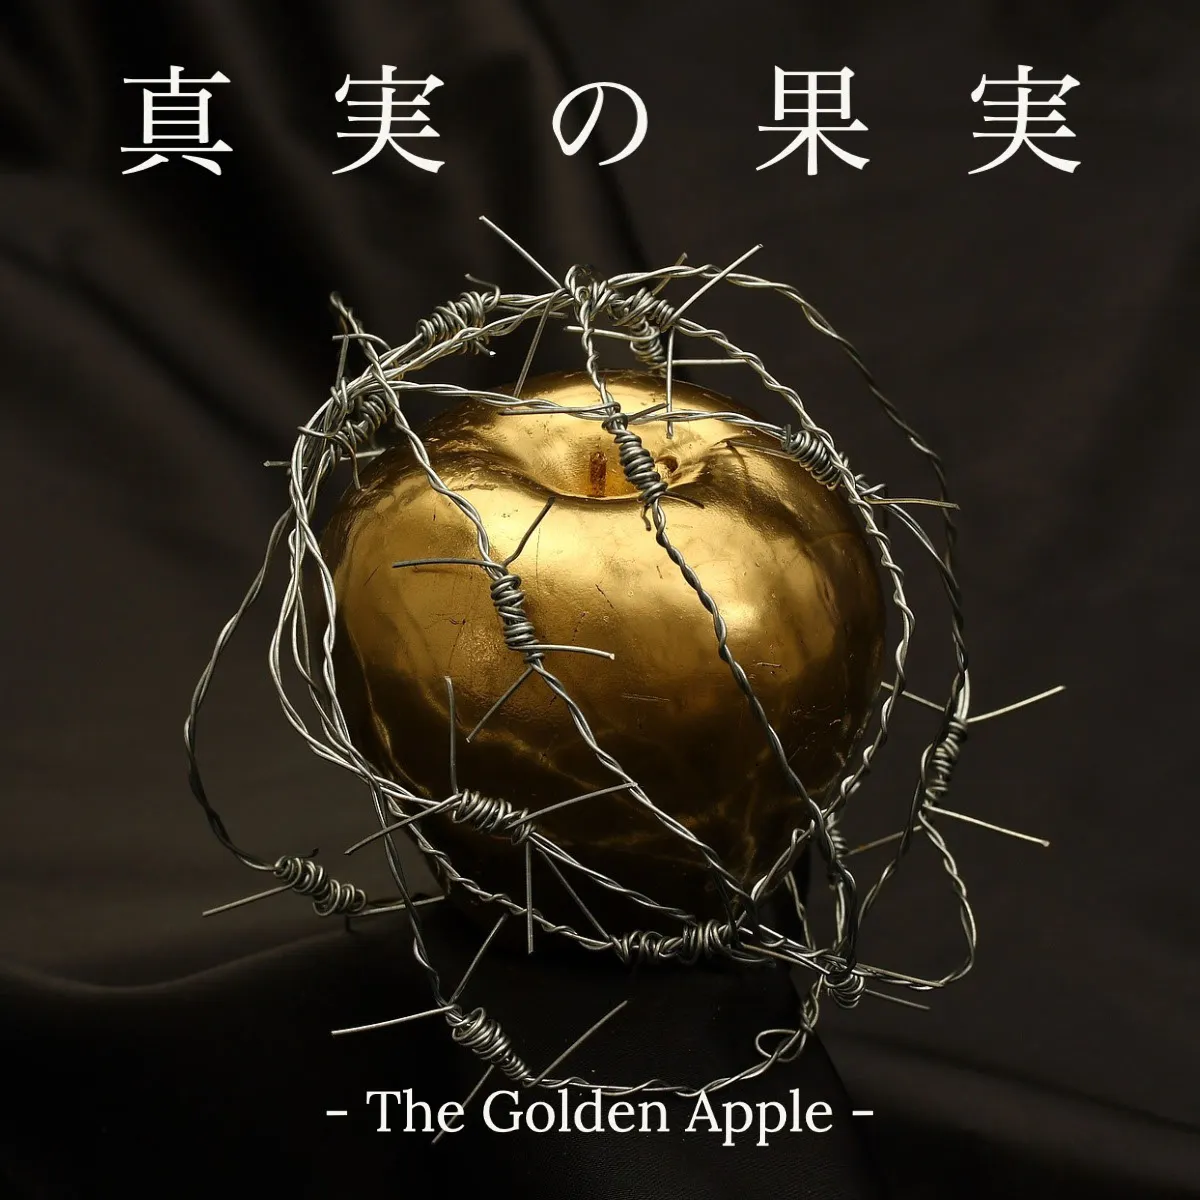 Gold apple album cover